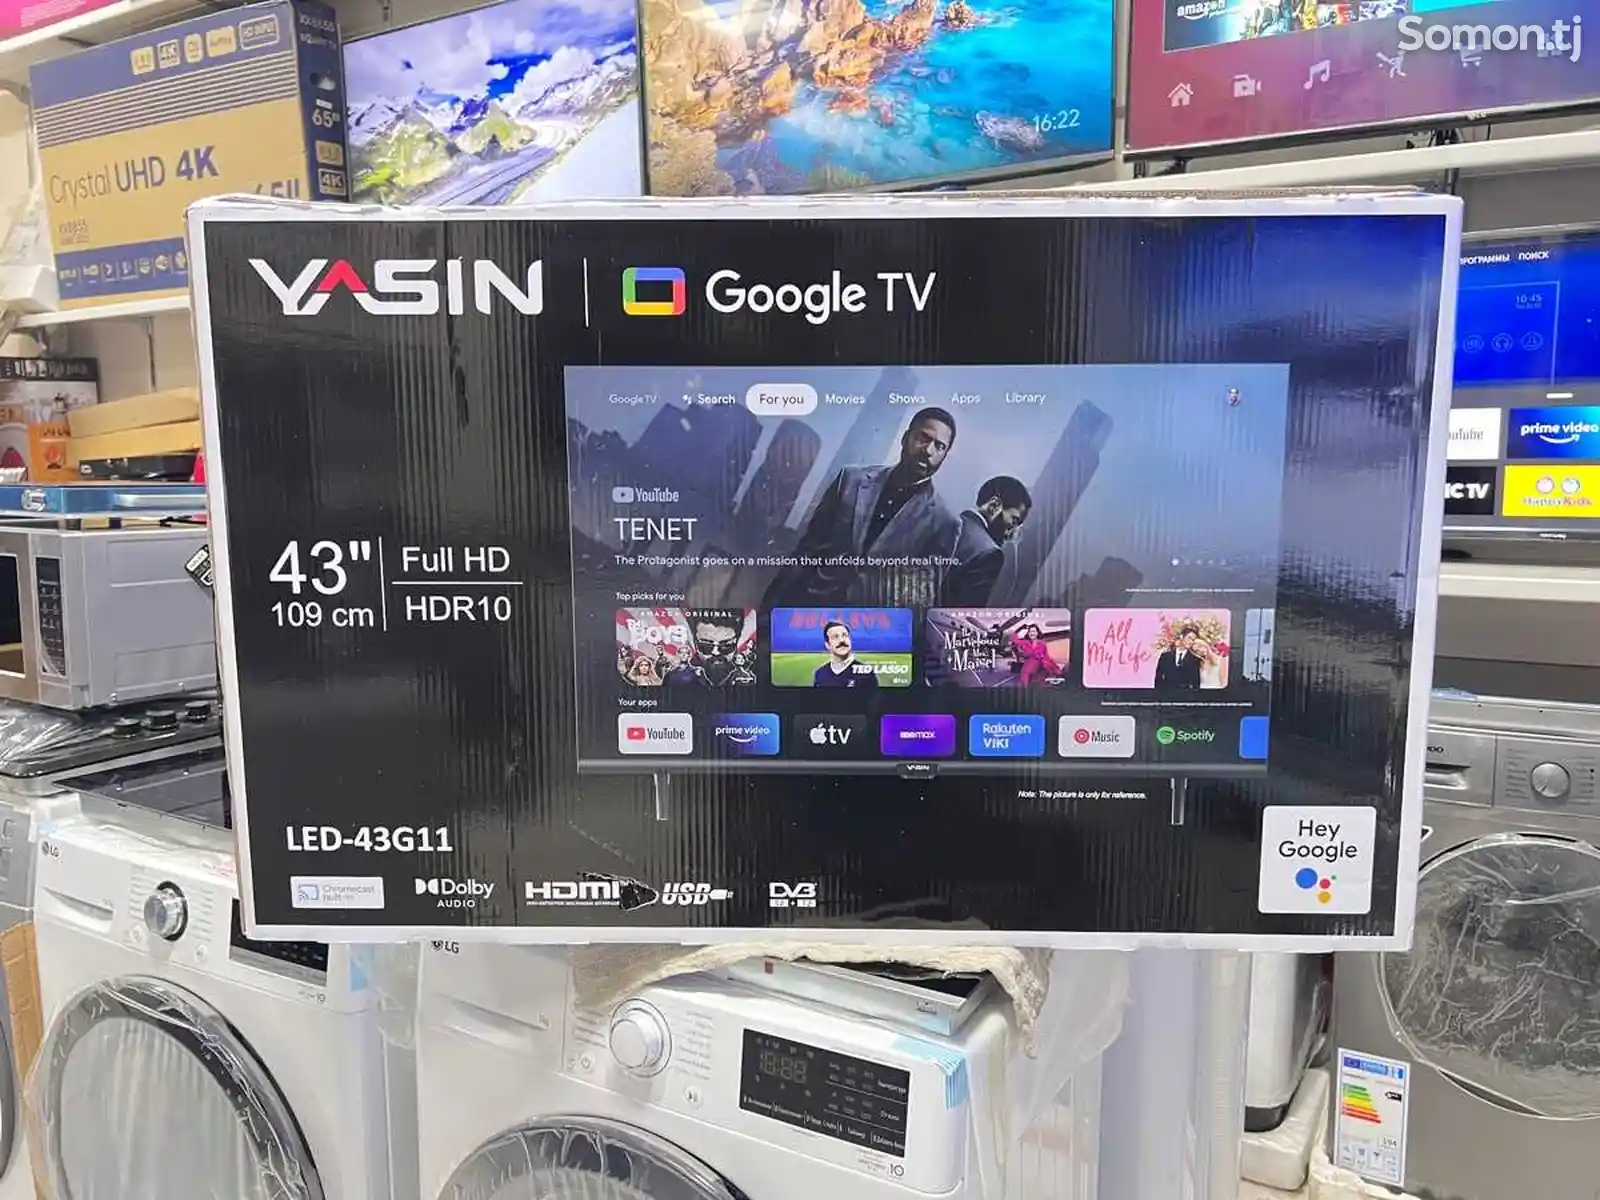 Телевизор Yasin 43